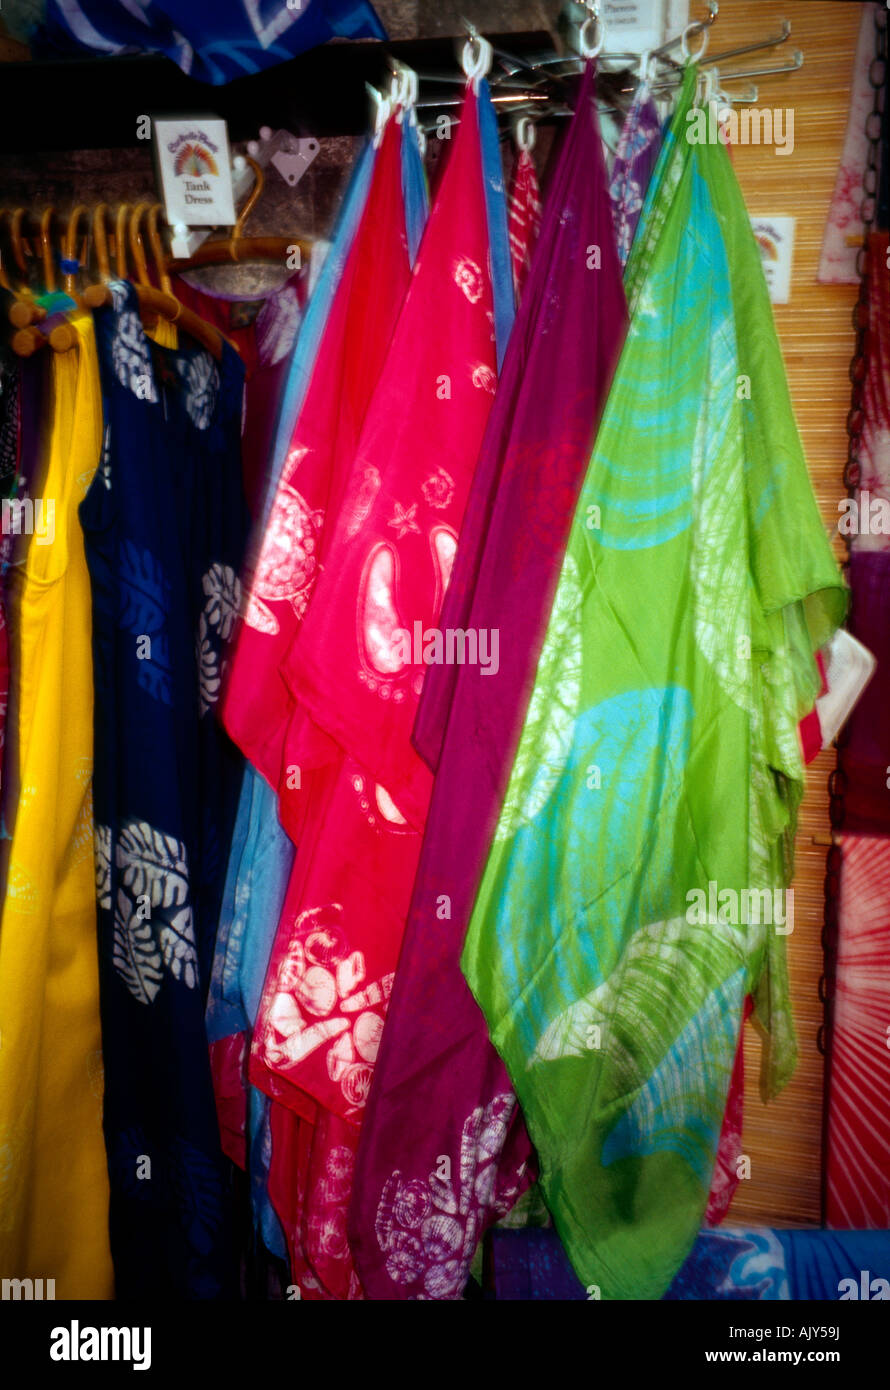 St Kitts Matériel vêtements colorés Banque D'Images